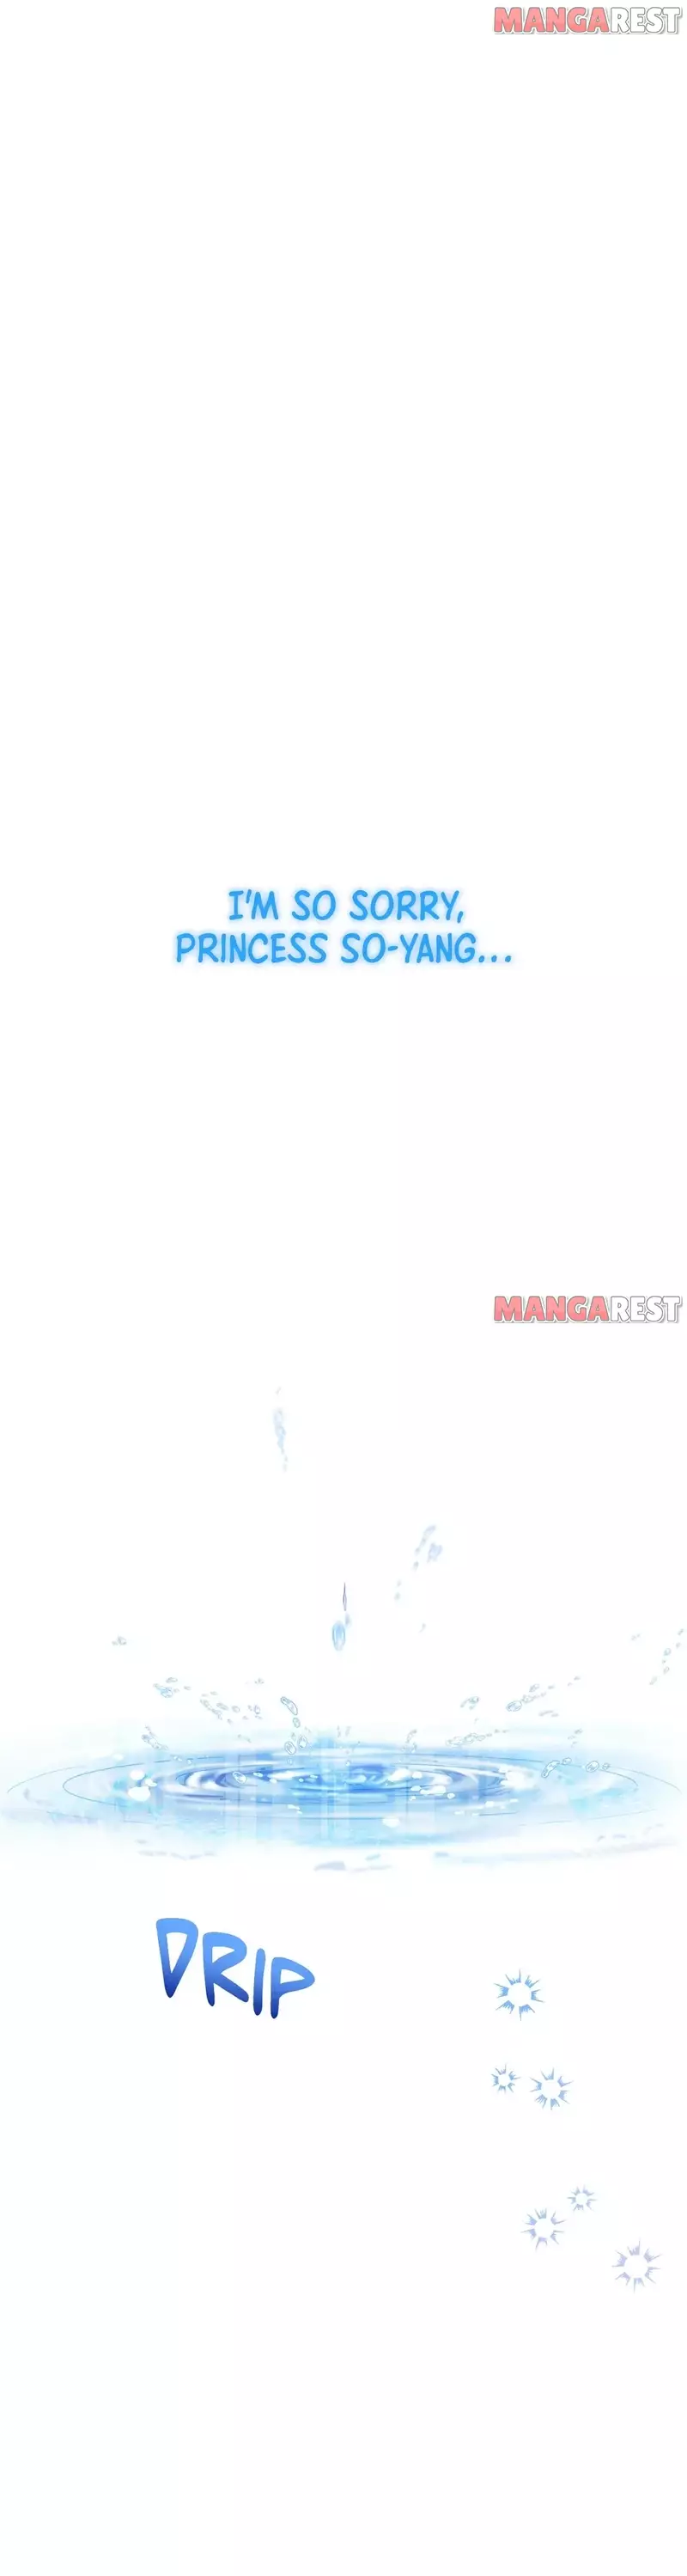 Haechi’S Princess - 38 page 39-41afd6d1